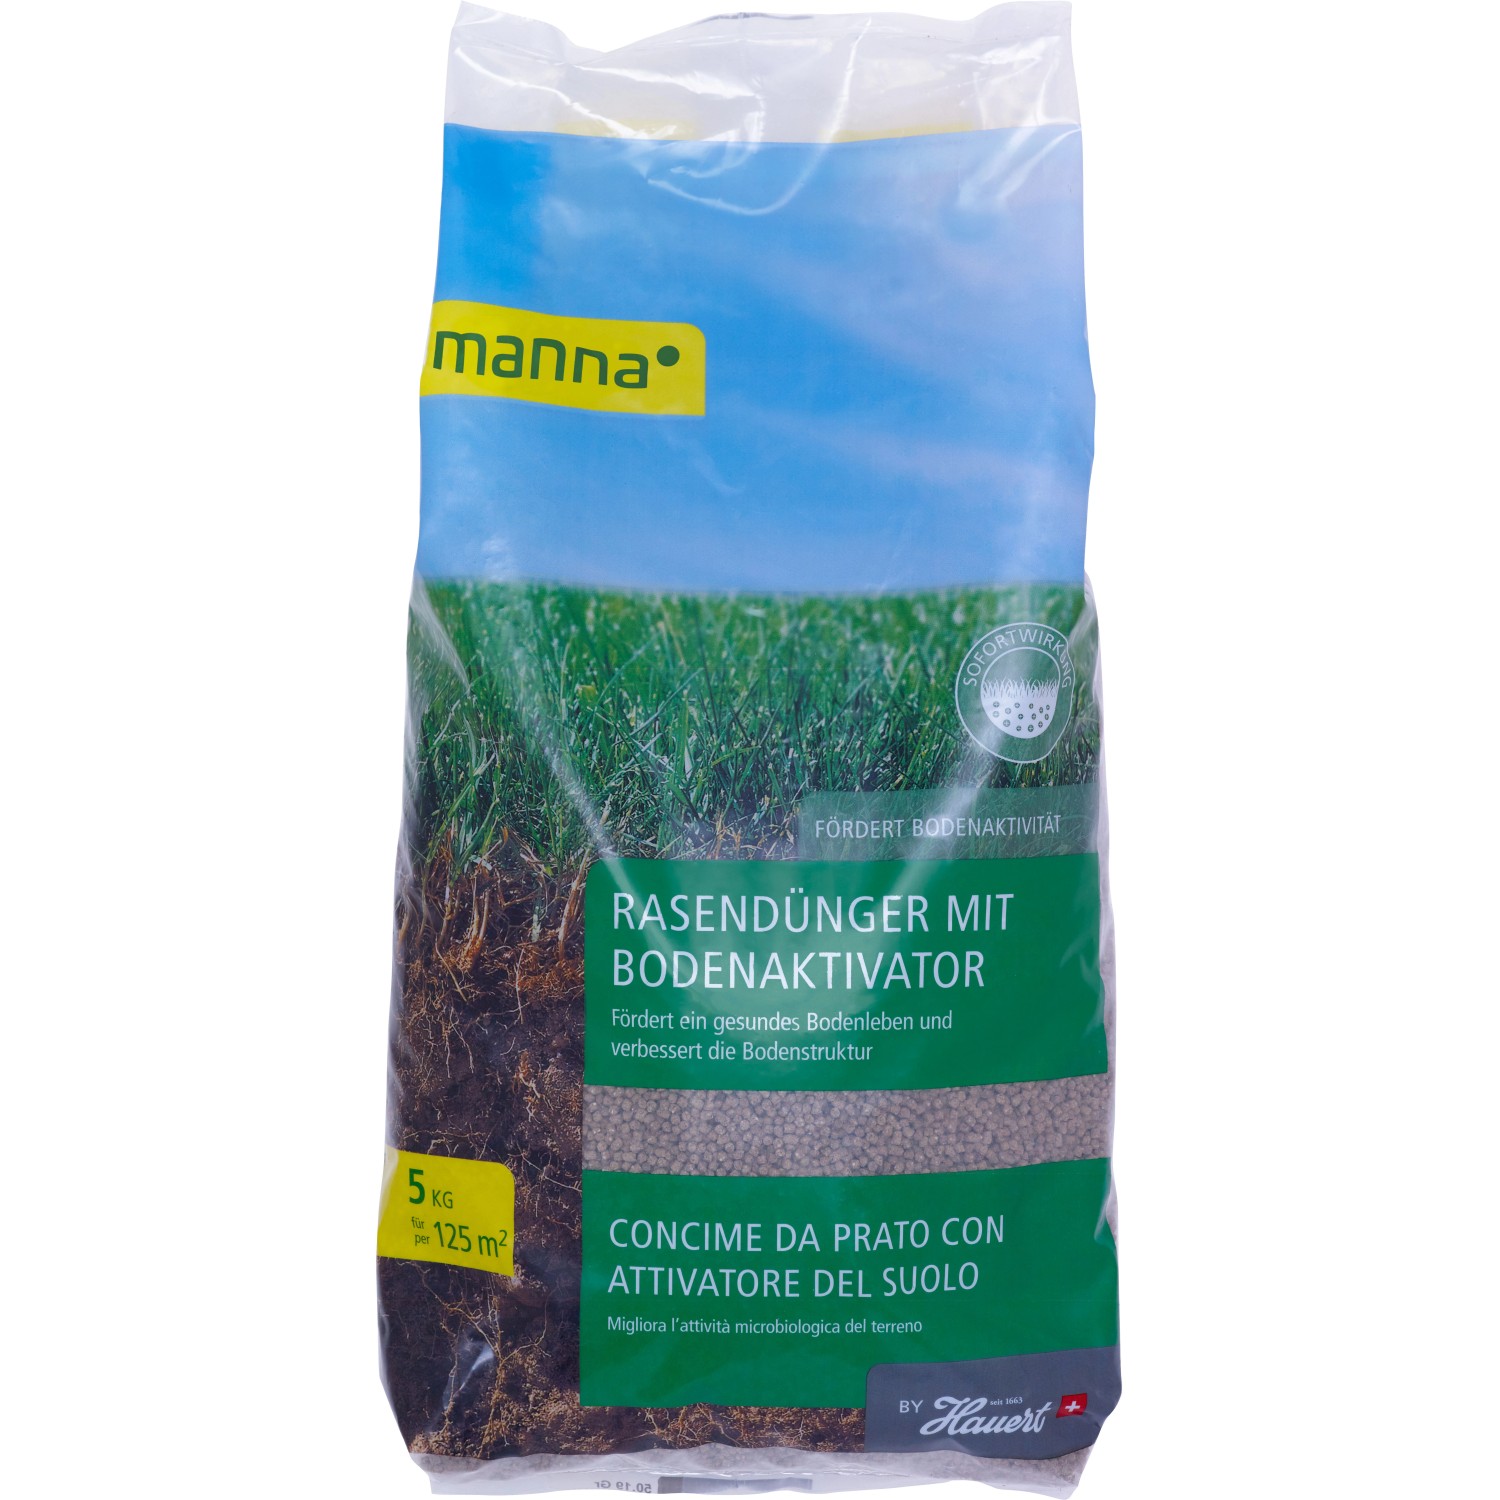 Manna Rasendünger mit Bodenaktivator 5 kg von Manna